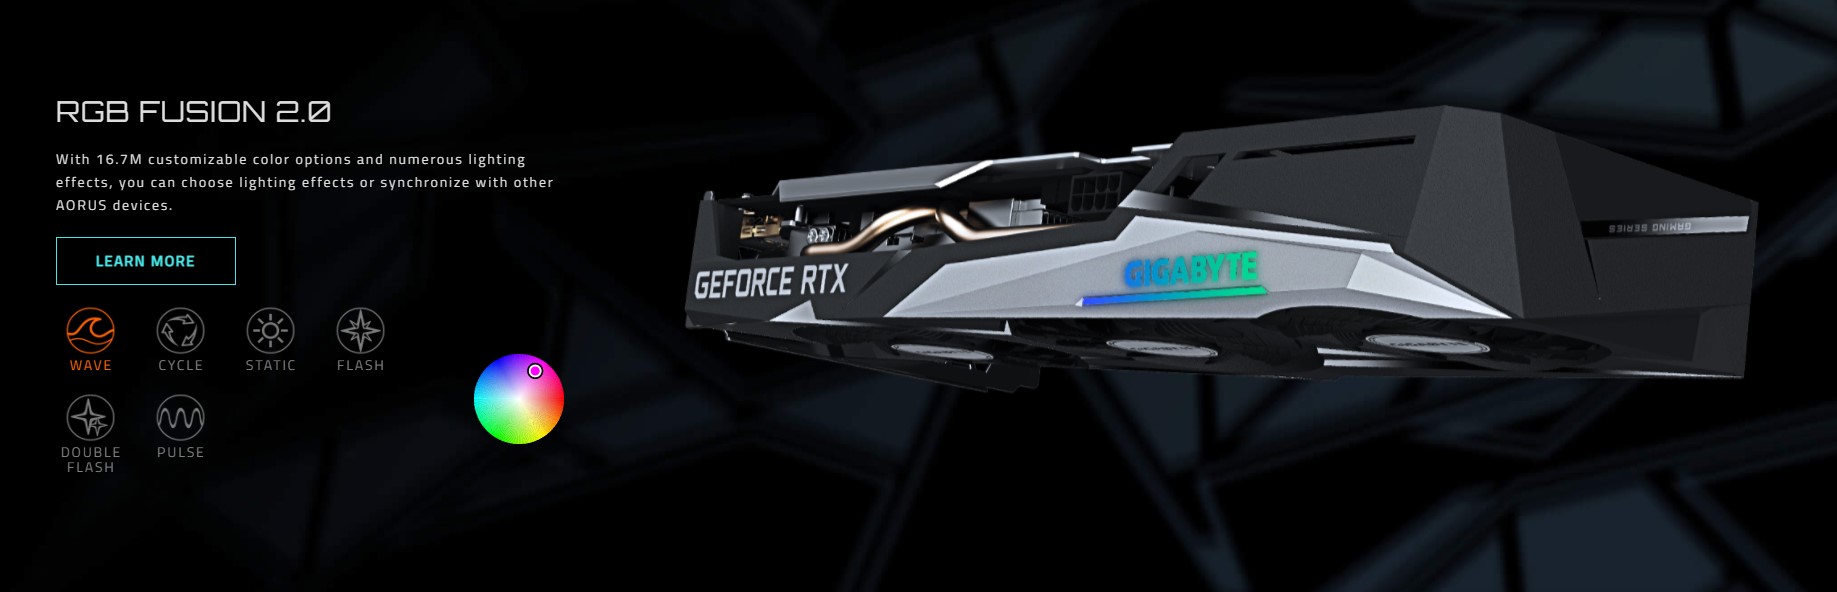 Gigabyte RTX 3050 GAMING OC